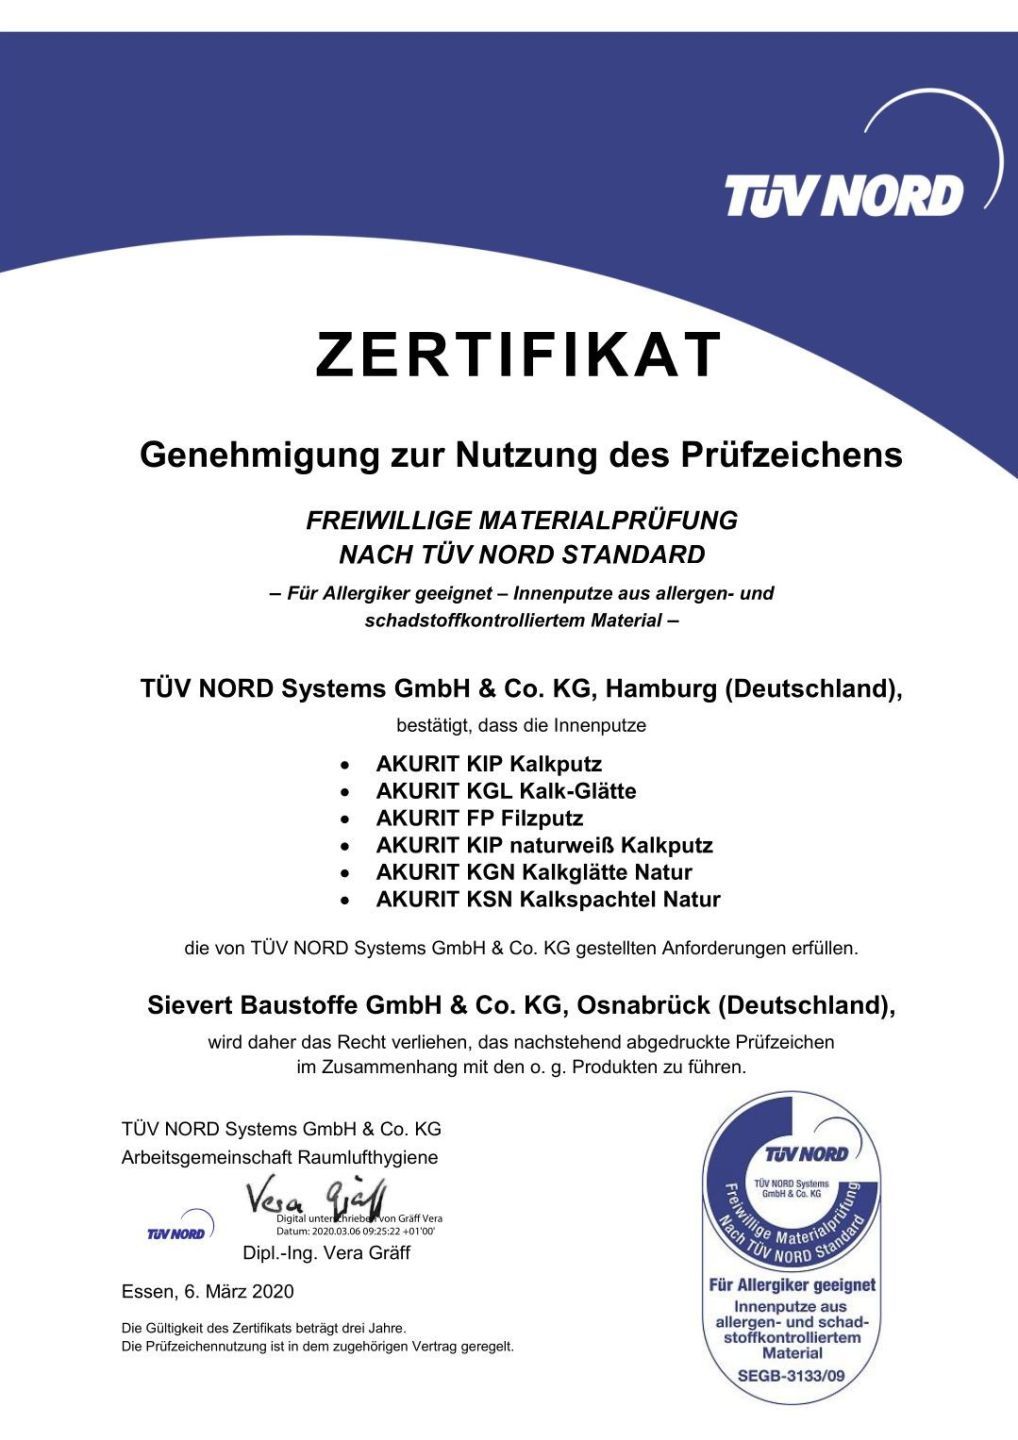 Сертификат TÜV Nord на известковую продукцию akurit